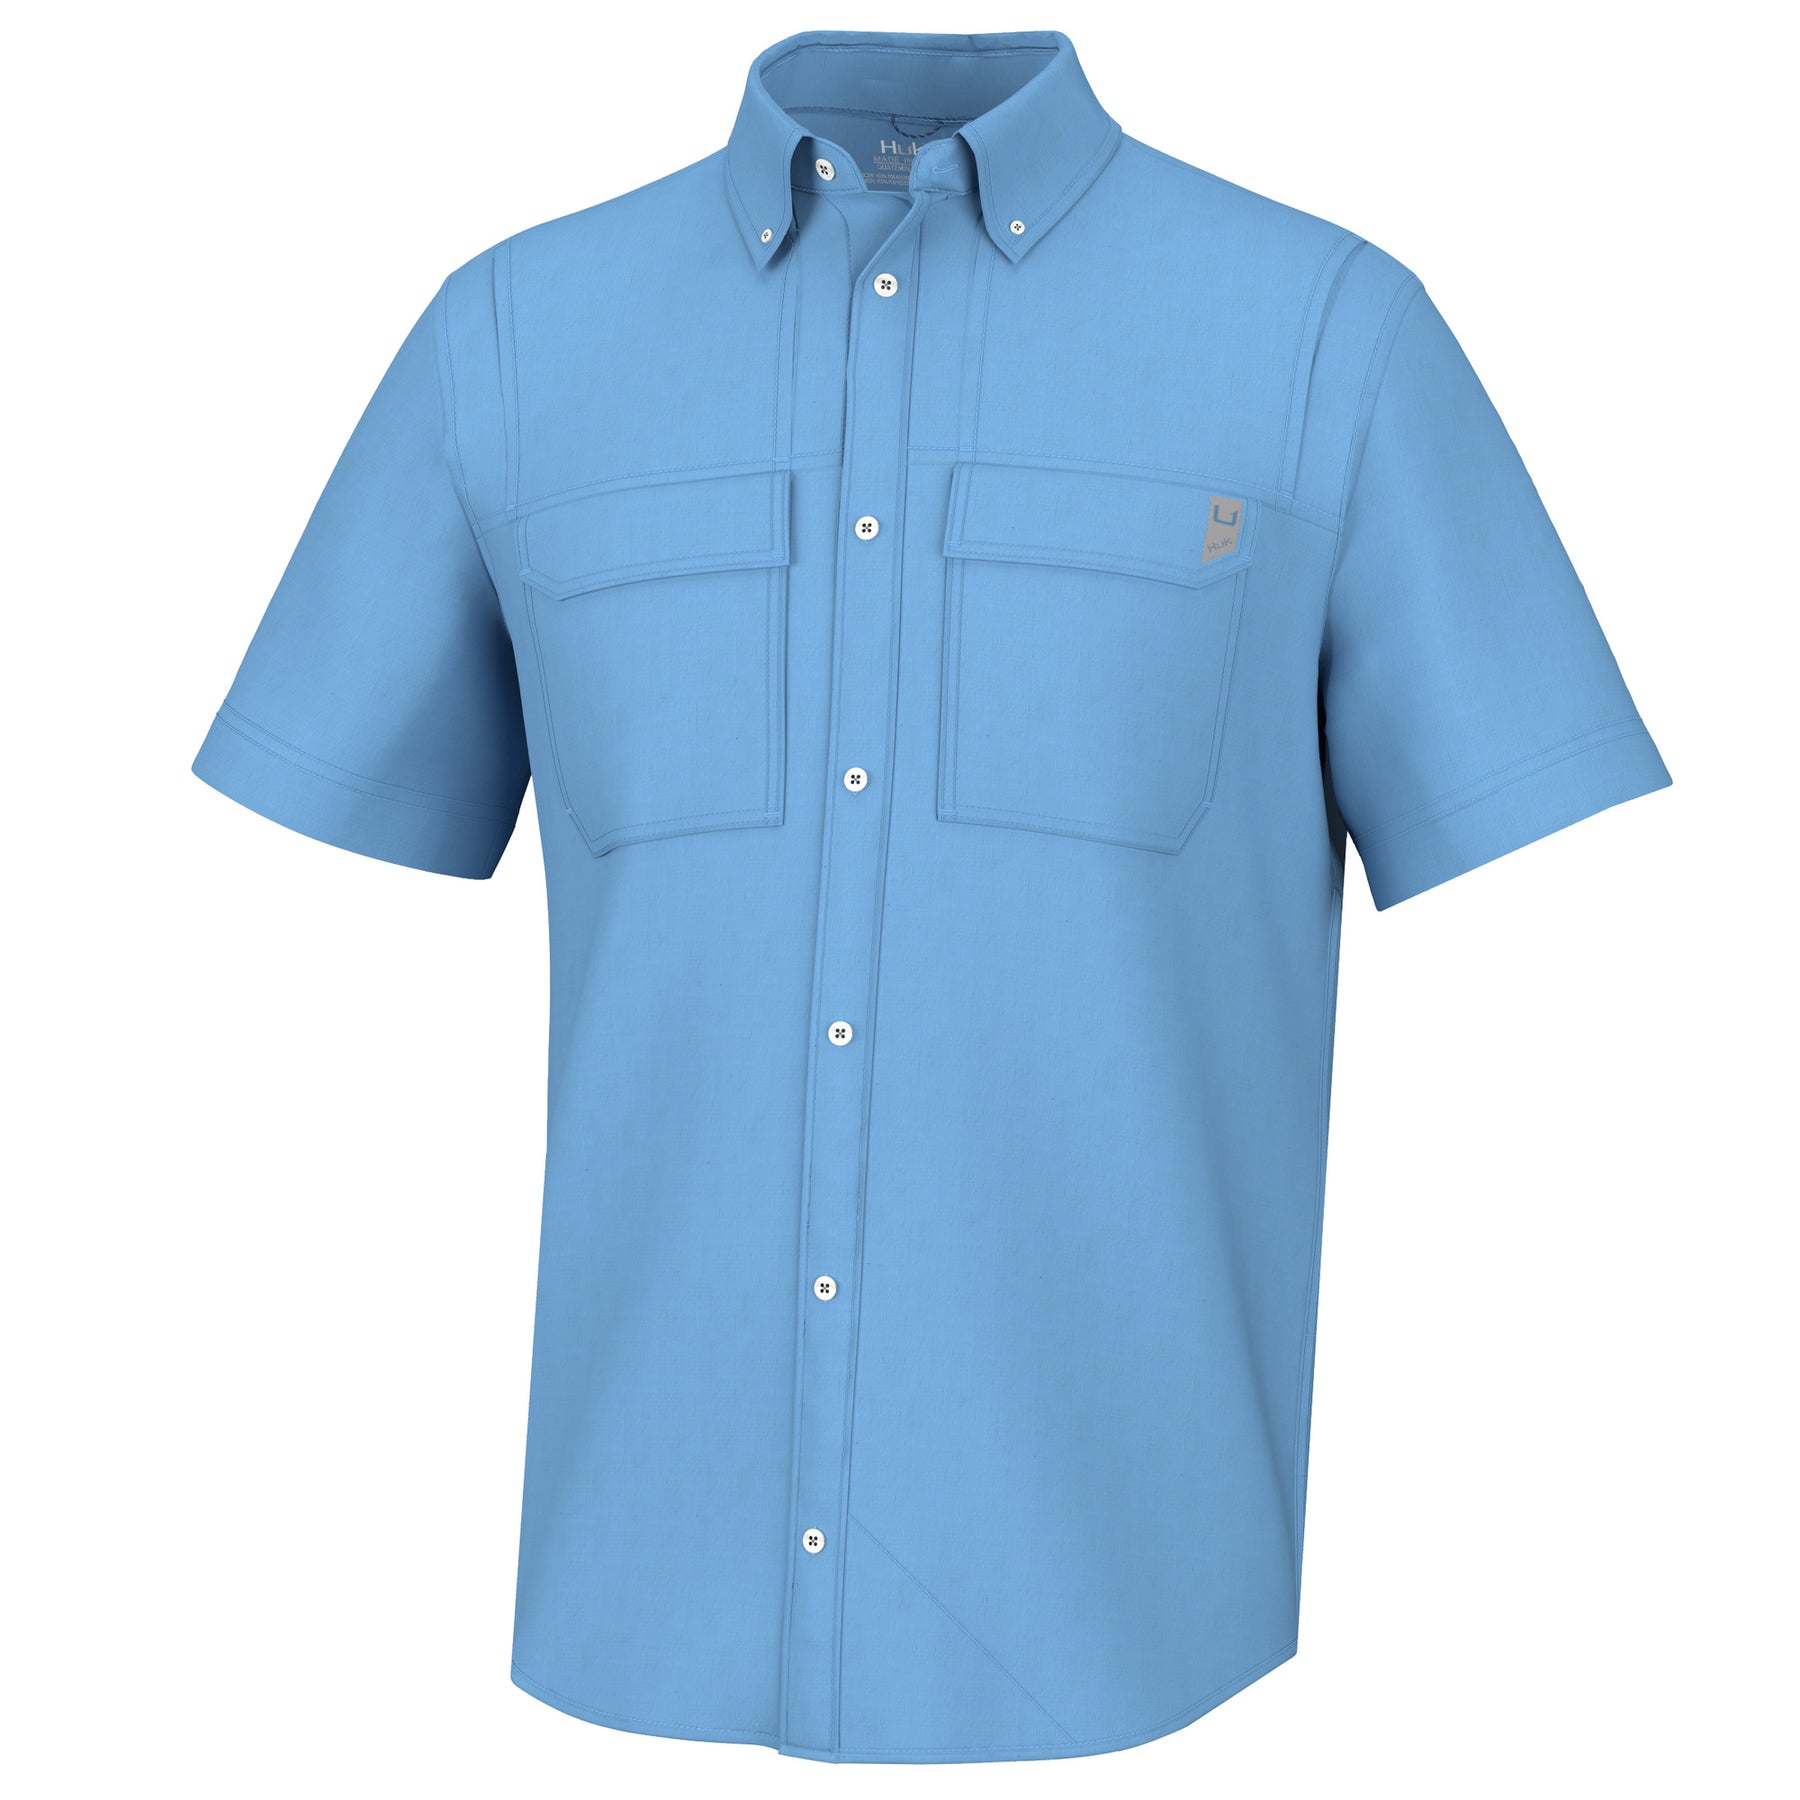 HUK Creekbed Short Sleeve Buton Down Shirt - Marolina Blue